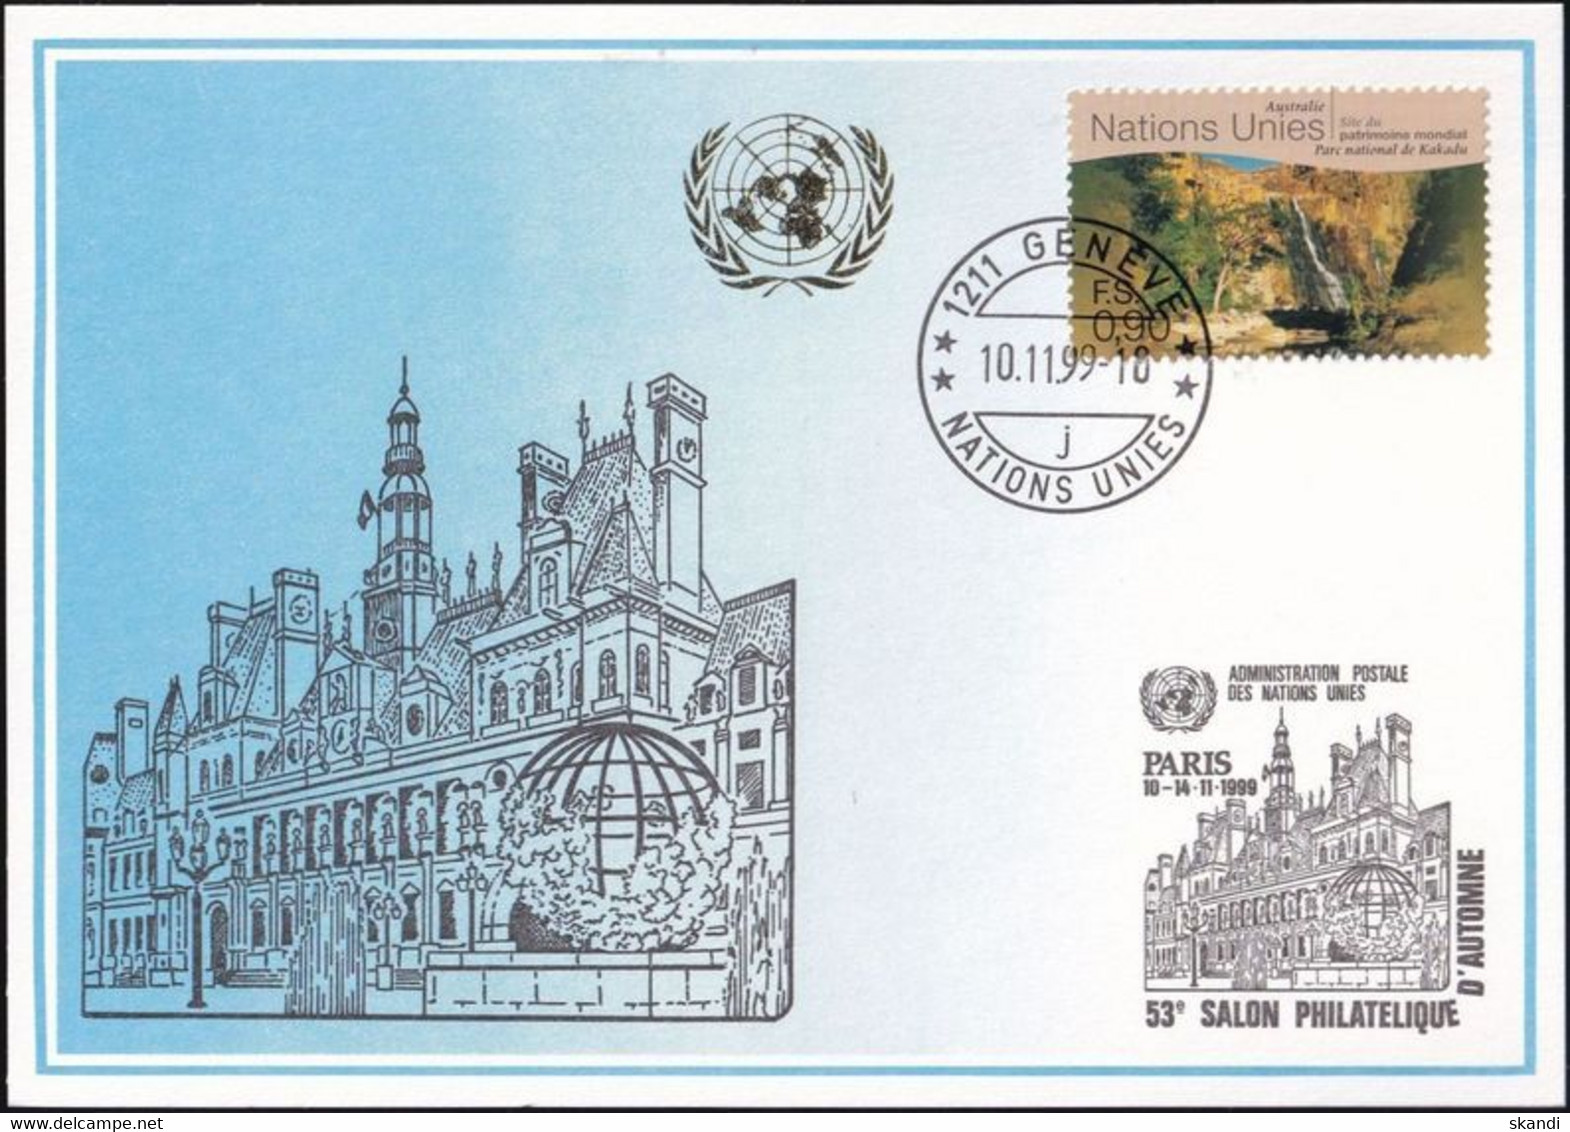 UNO GENF 1999 Mi-Nr. 305 Blaue Karte - Blue Card  Mit Erinnerungsstempel PARIS - Covers & Documents